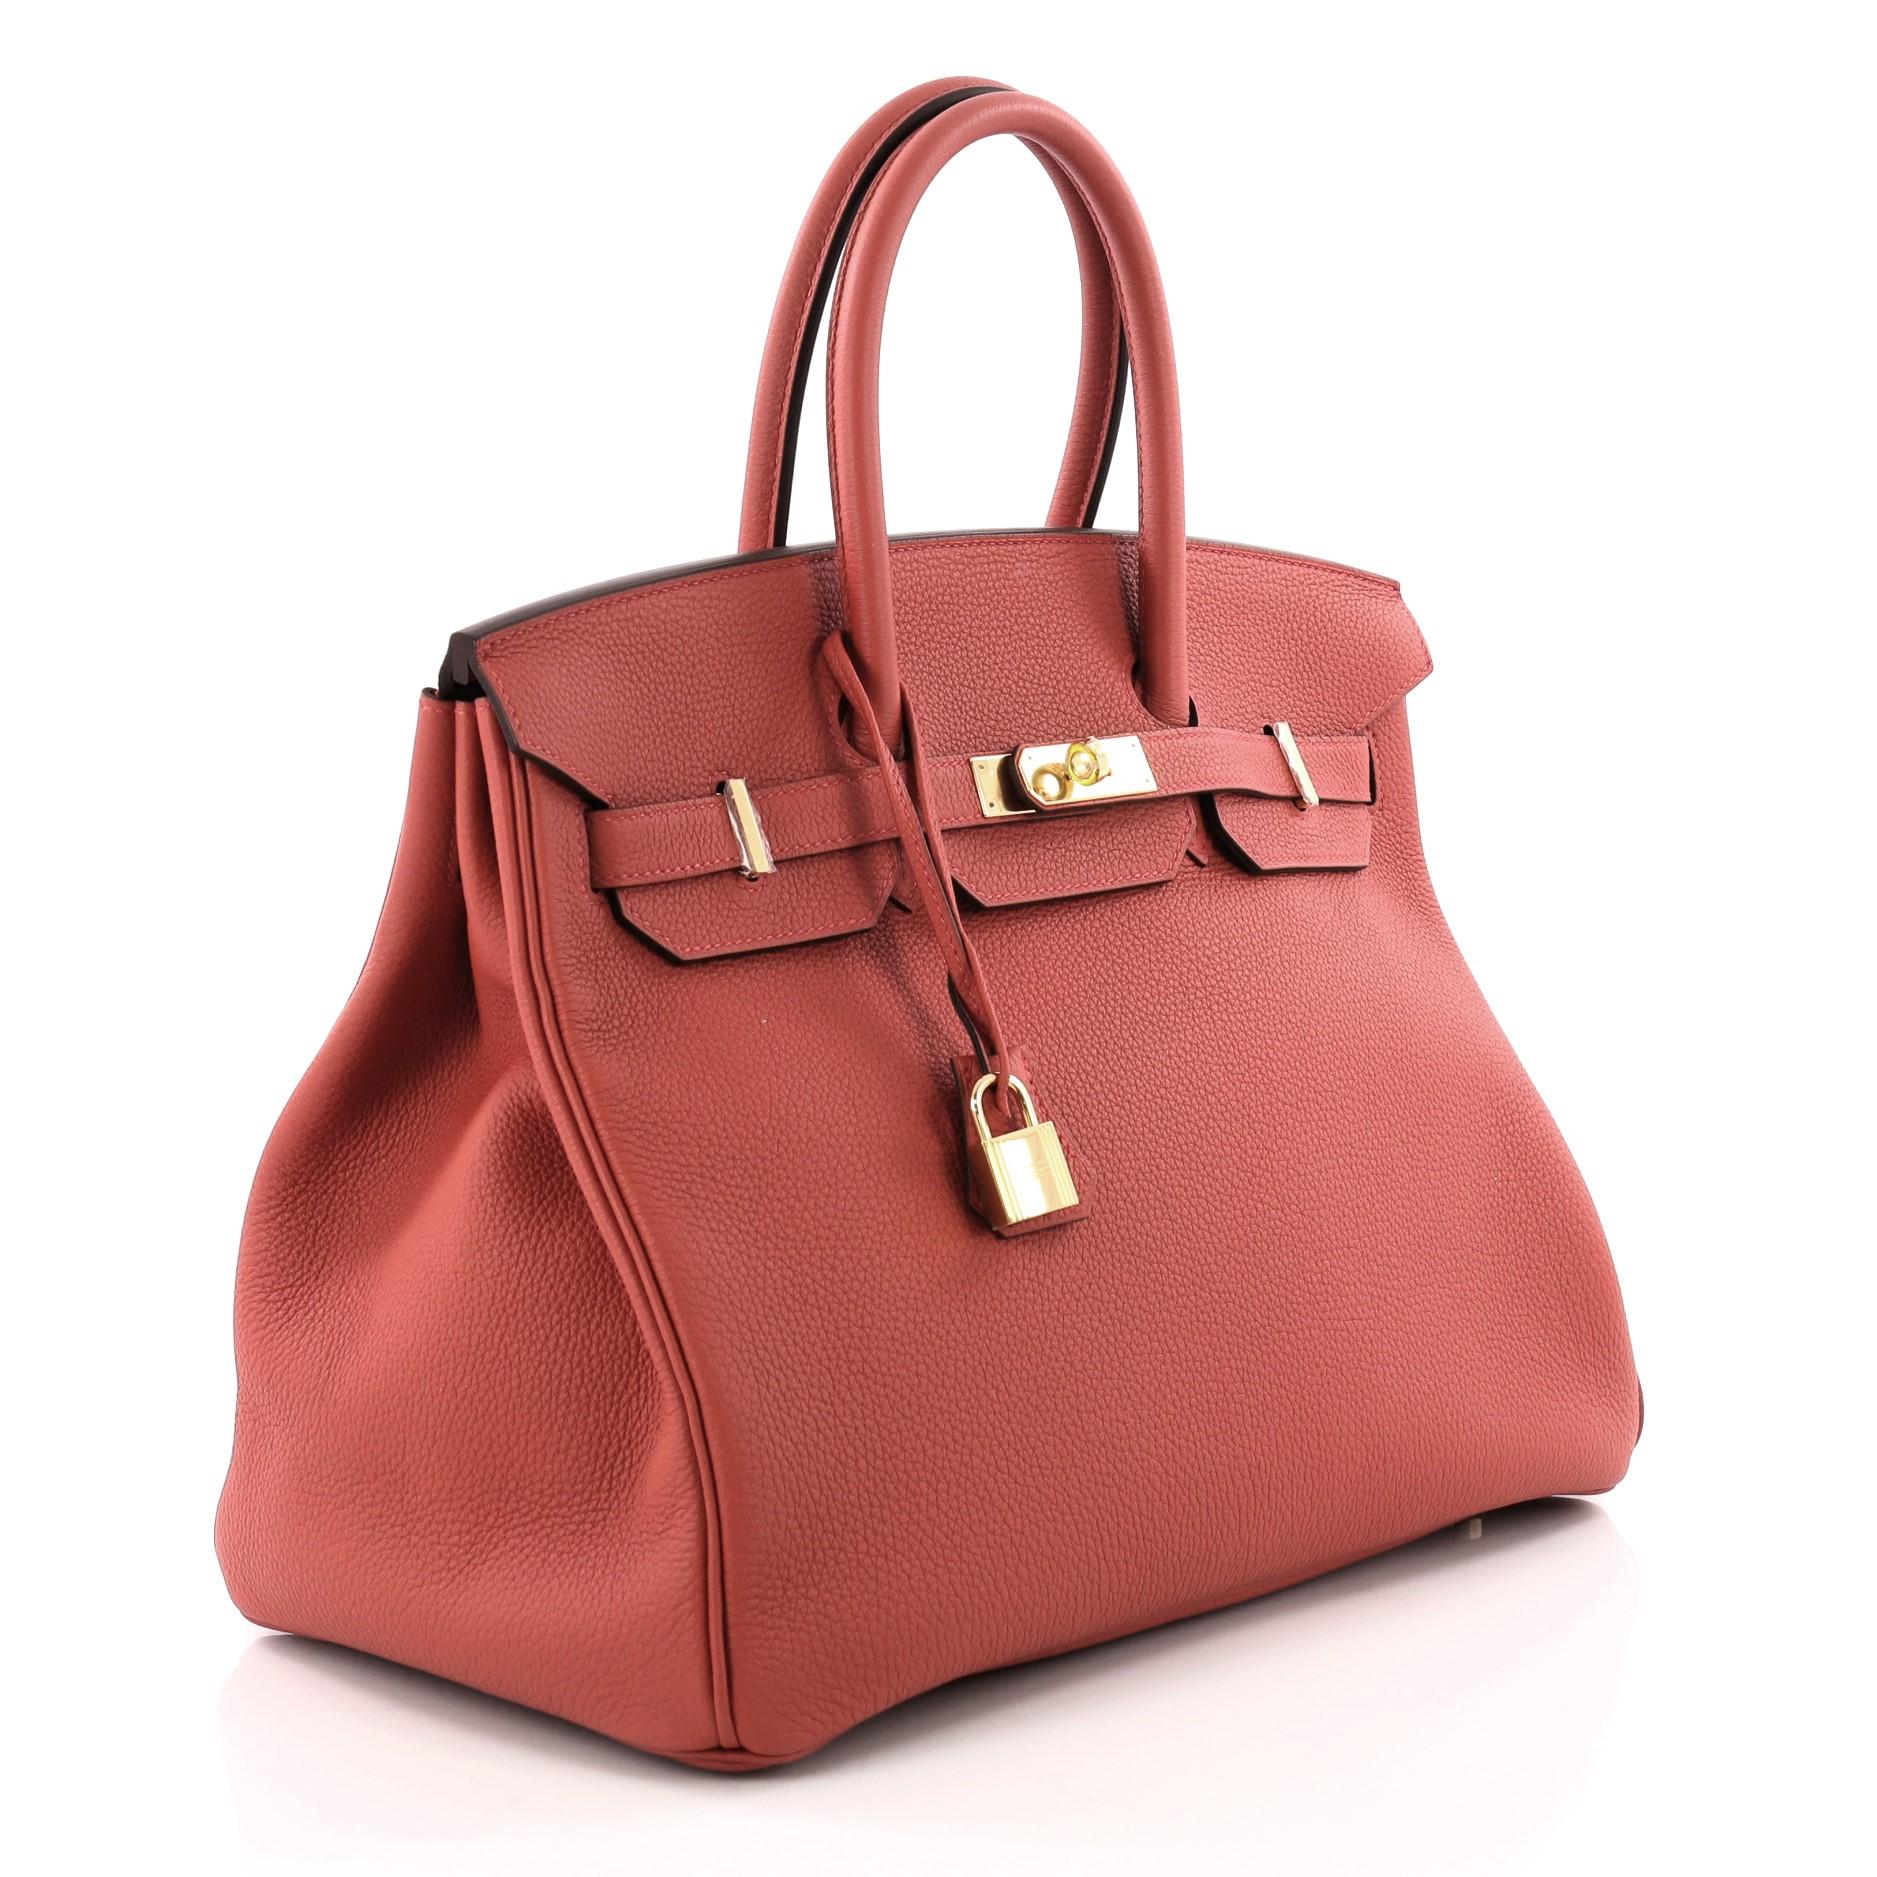 Pink  Hermes Birkin Handbag Rouge Tomate Togo with Gold Hardware 35